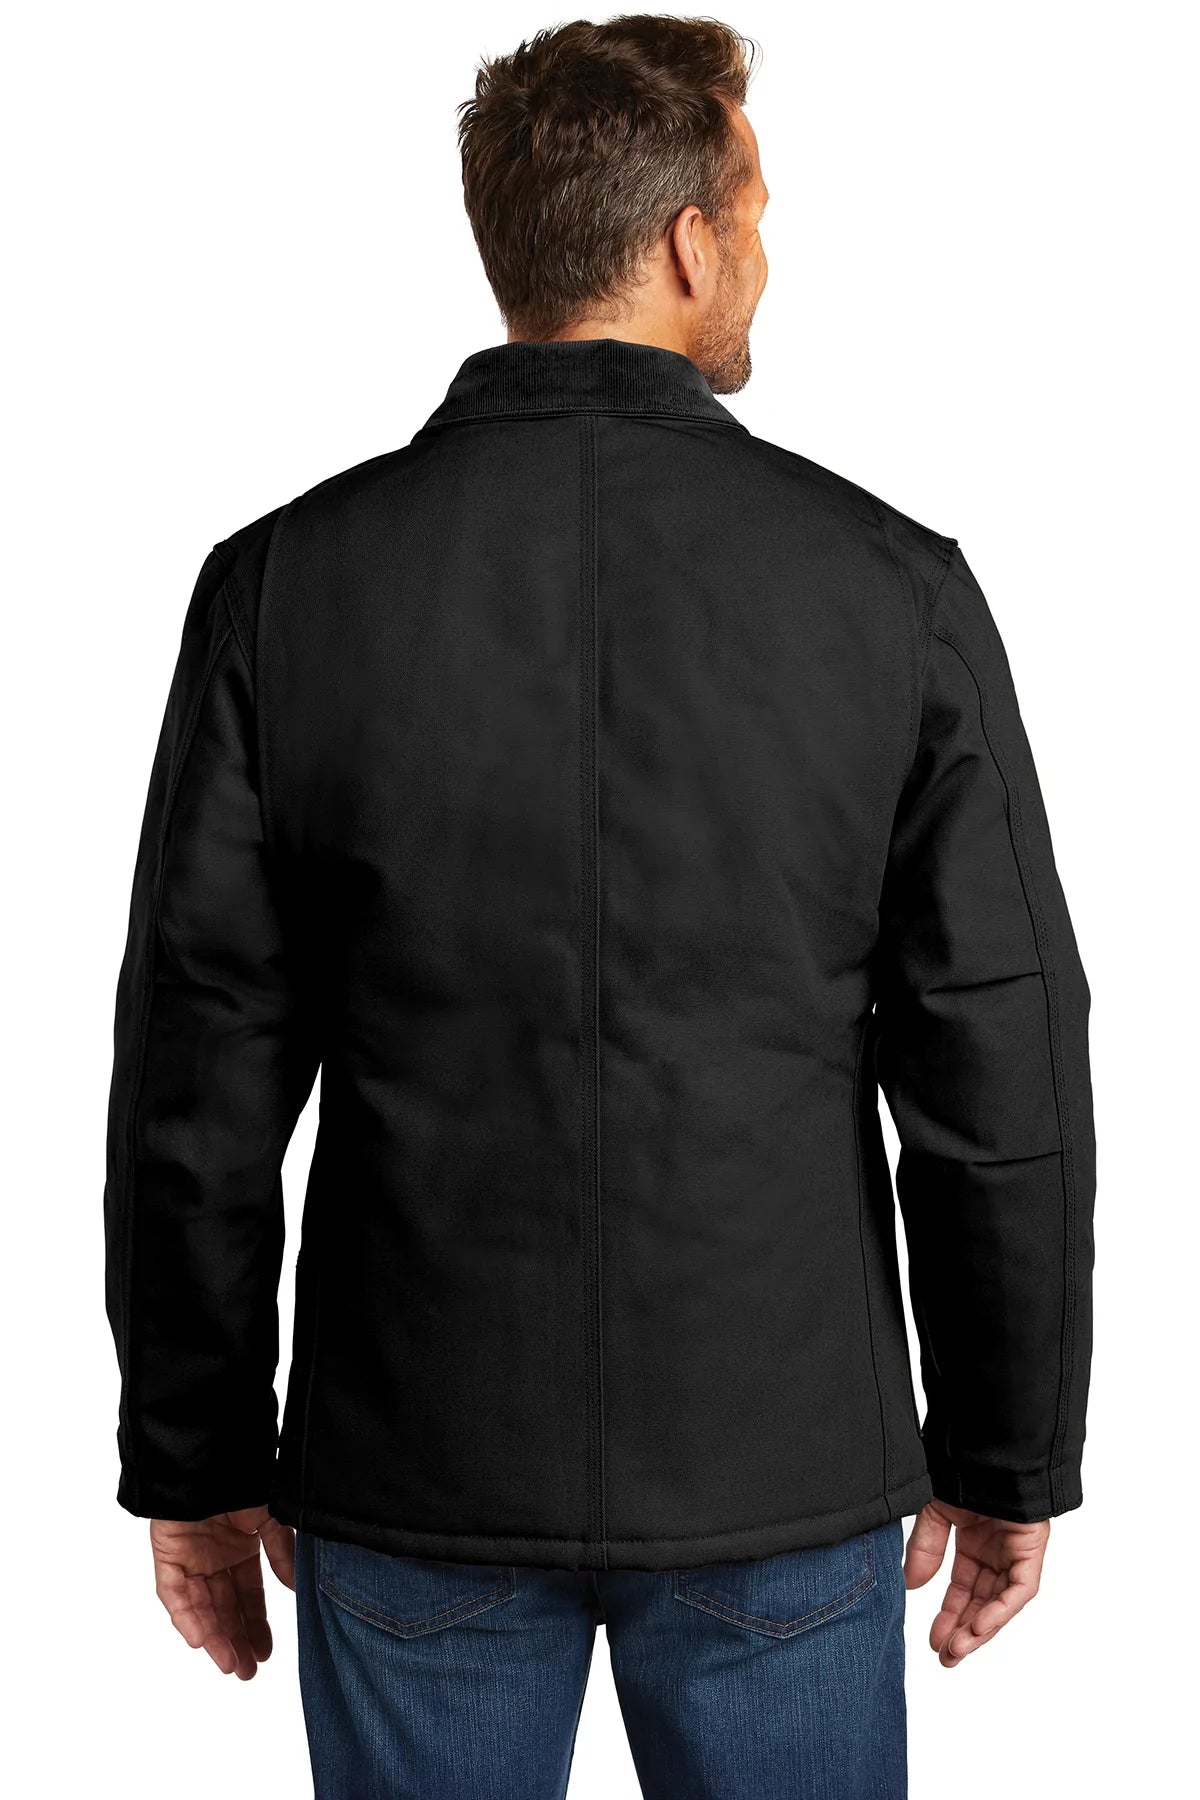 carhartt_ctc003 _black_company_logo_jackets